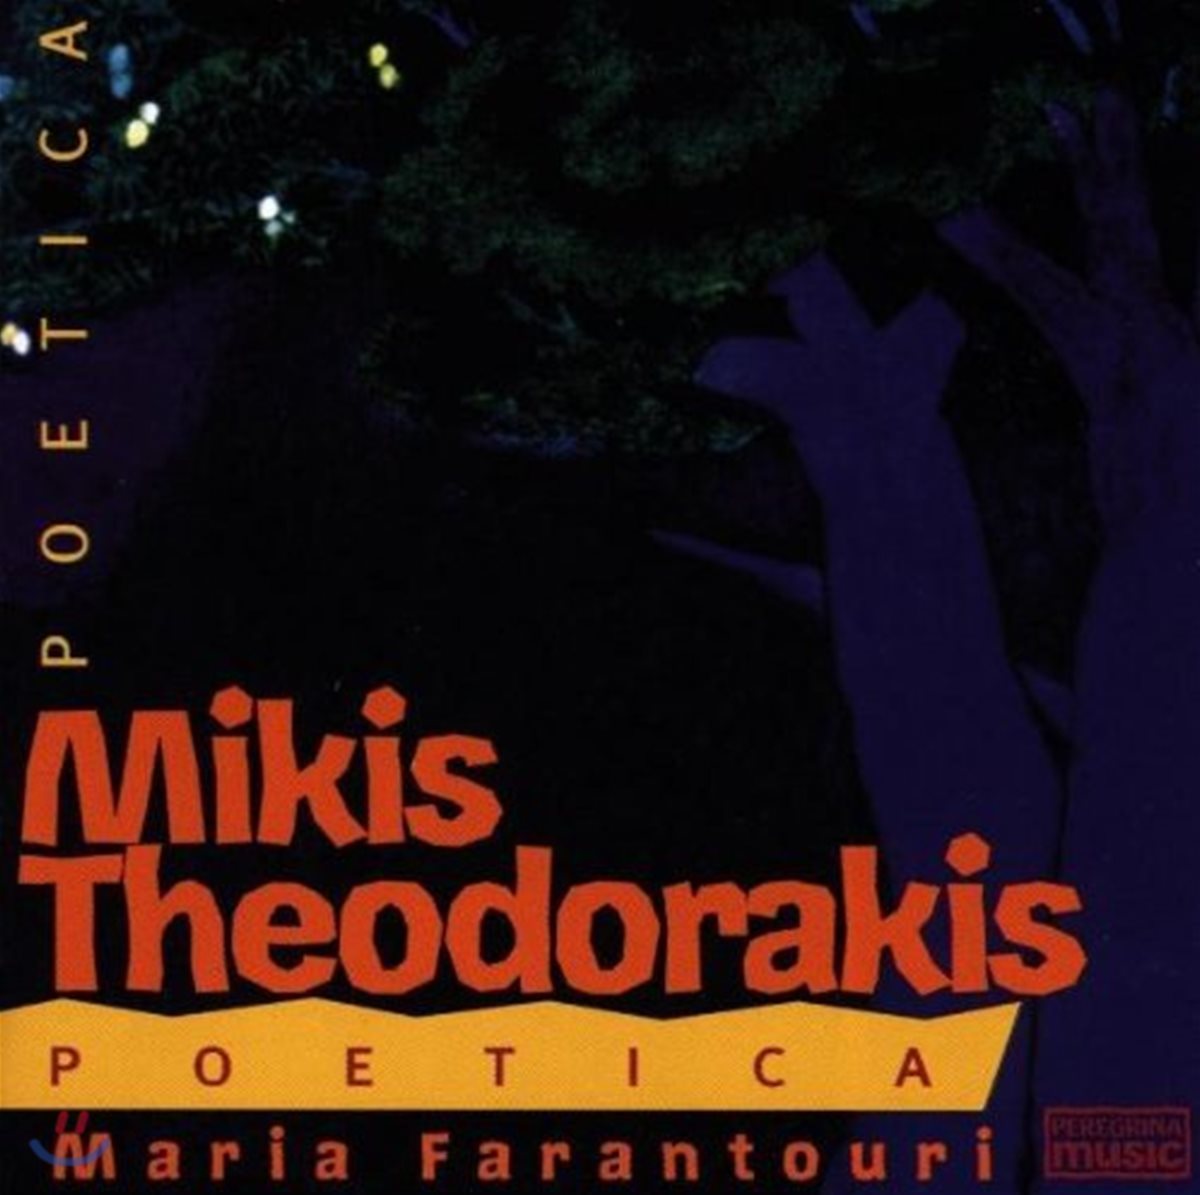 Mikis Theodorakis - Poetica